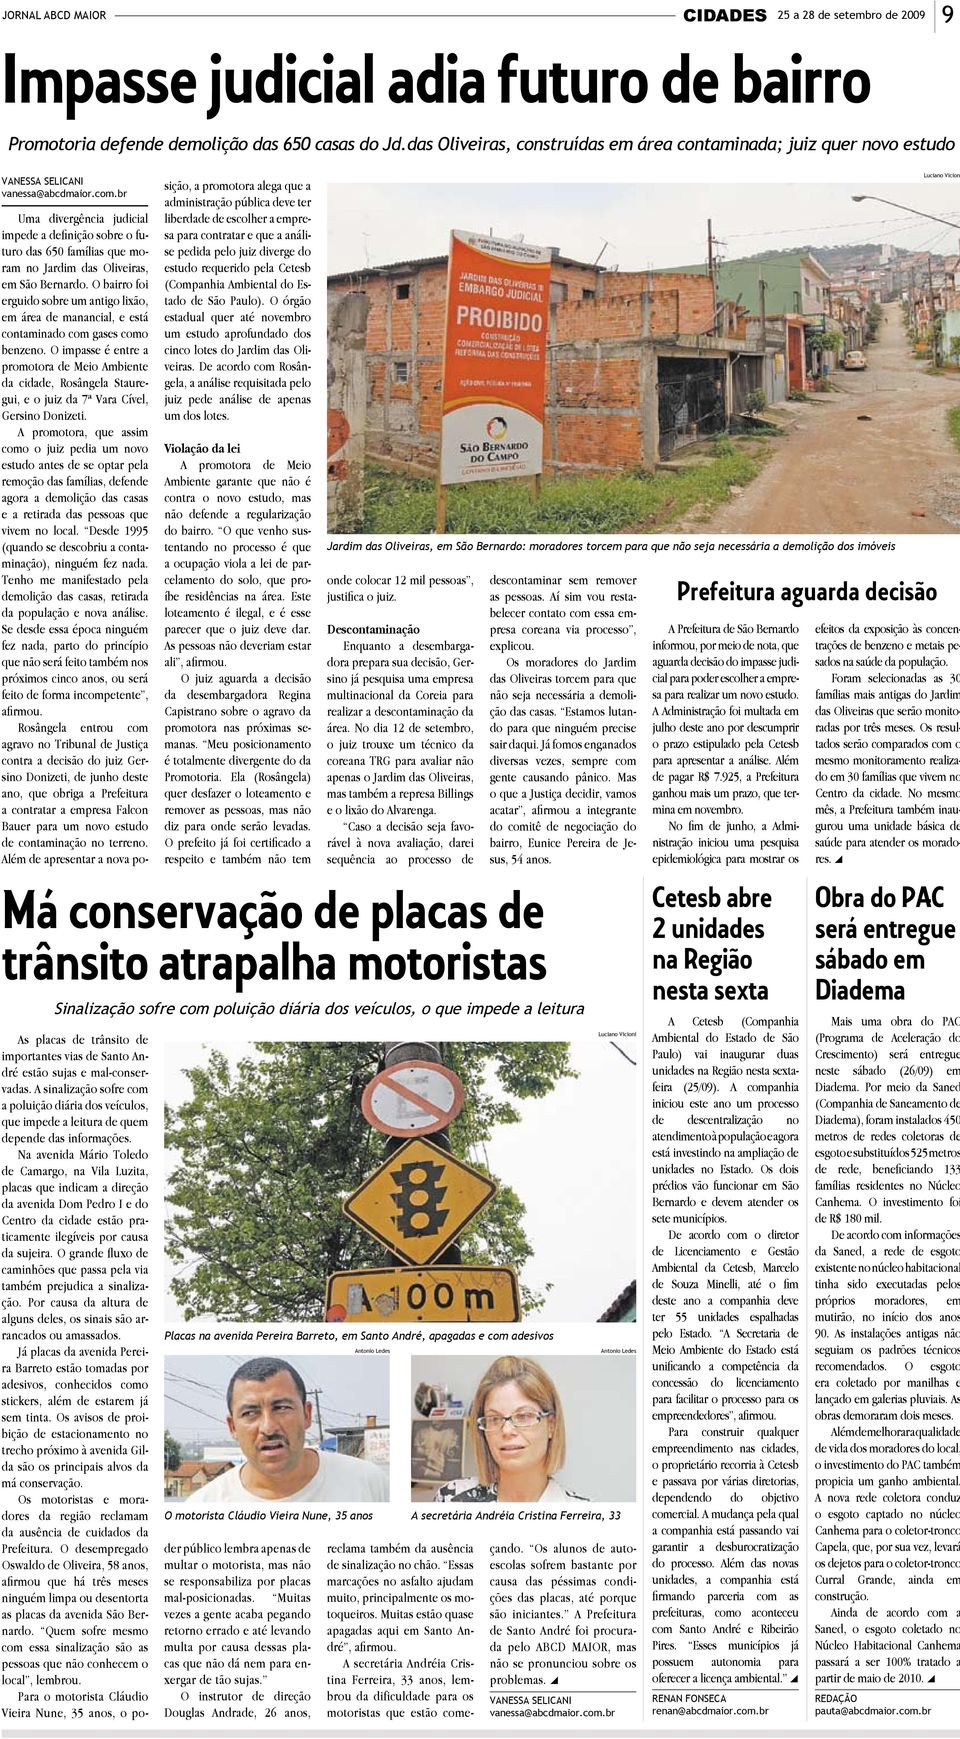 br Uma divergência judicial impede a definição sobre o futuro das 650 famílias que moram no Jardim das Oliveiras, em São Bernardo.